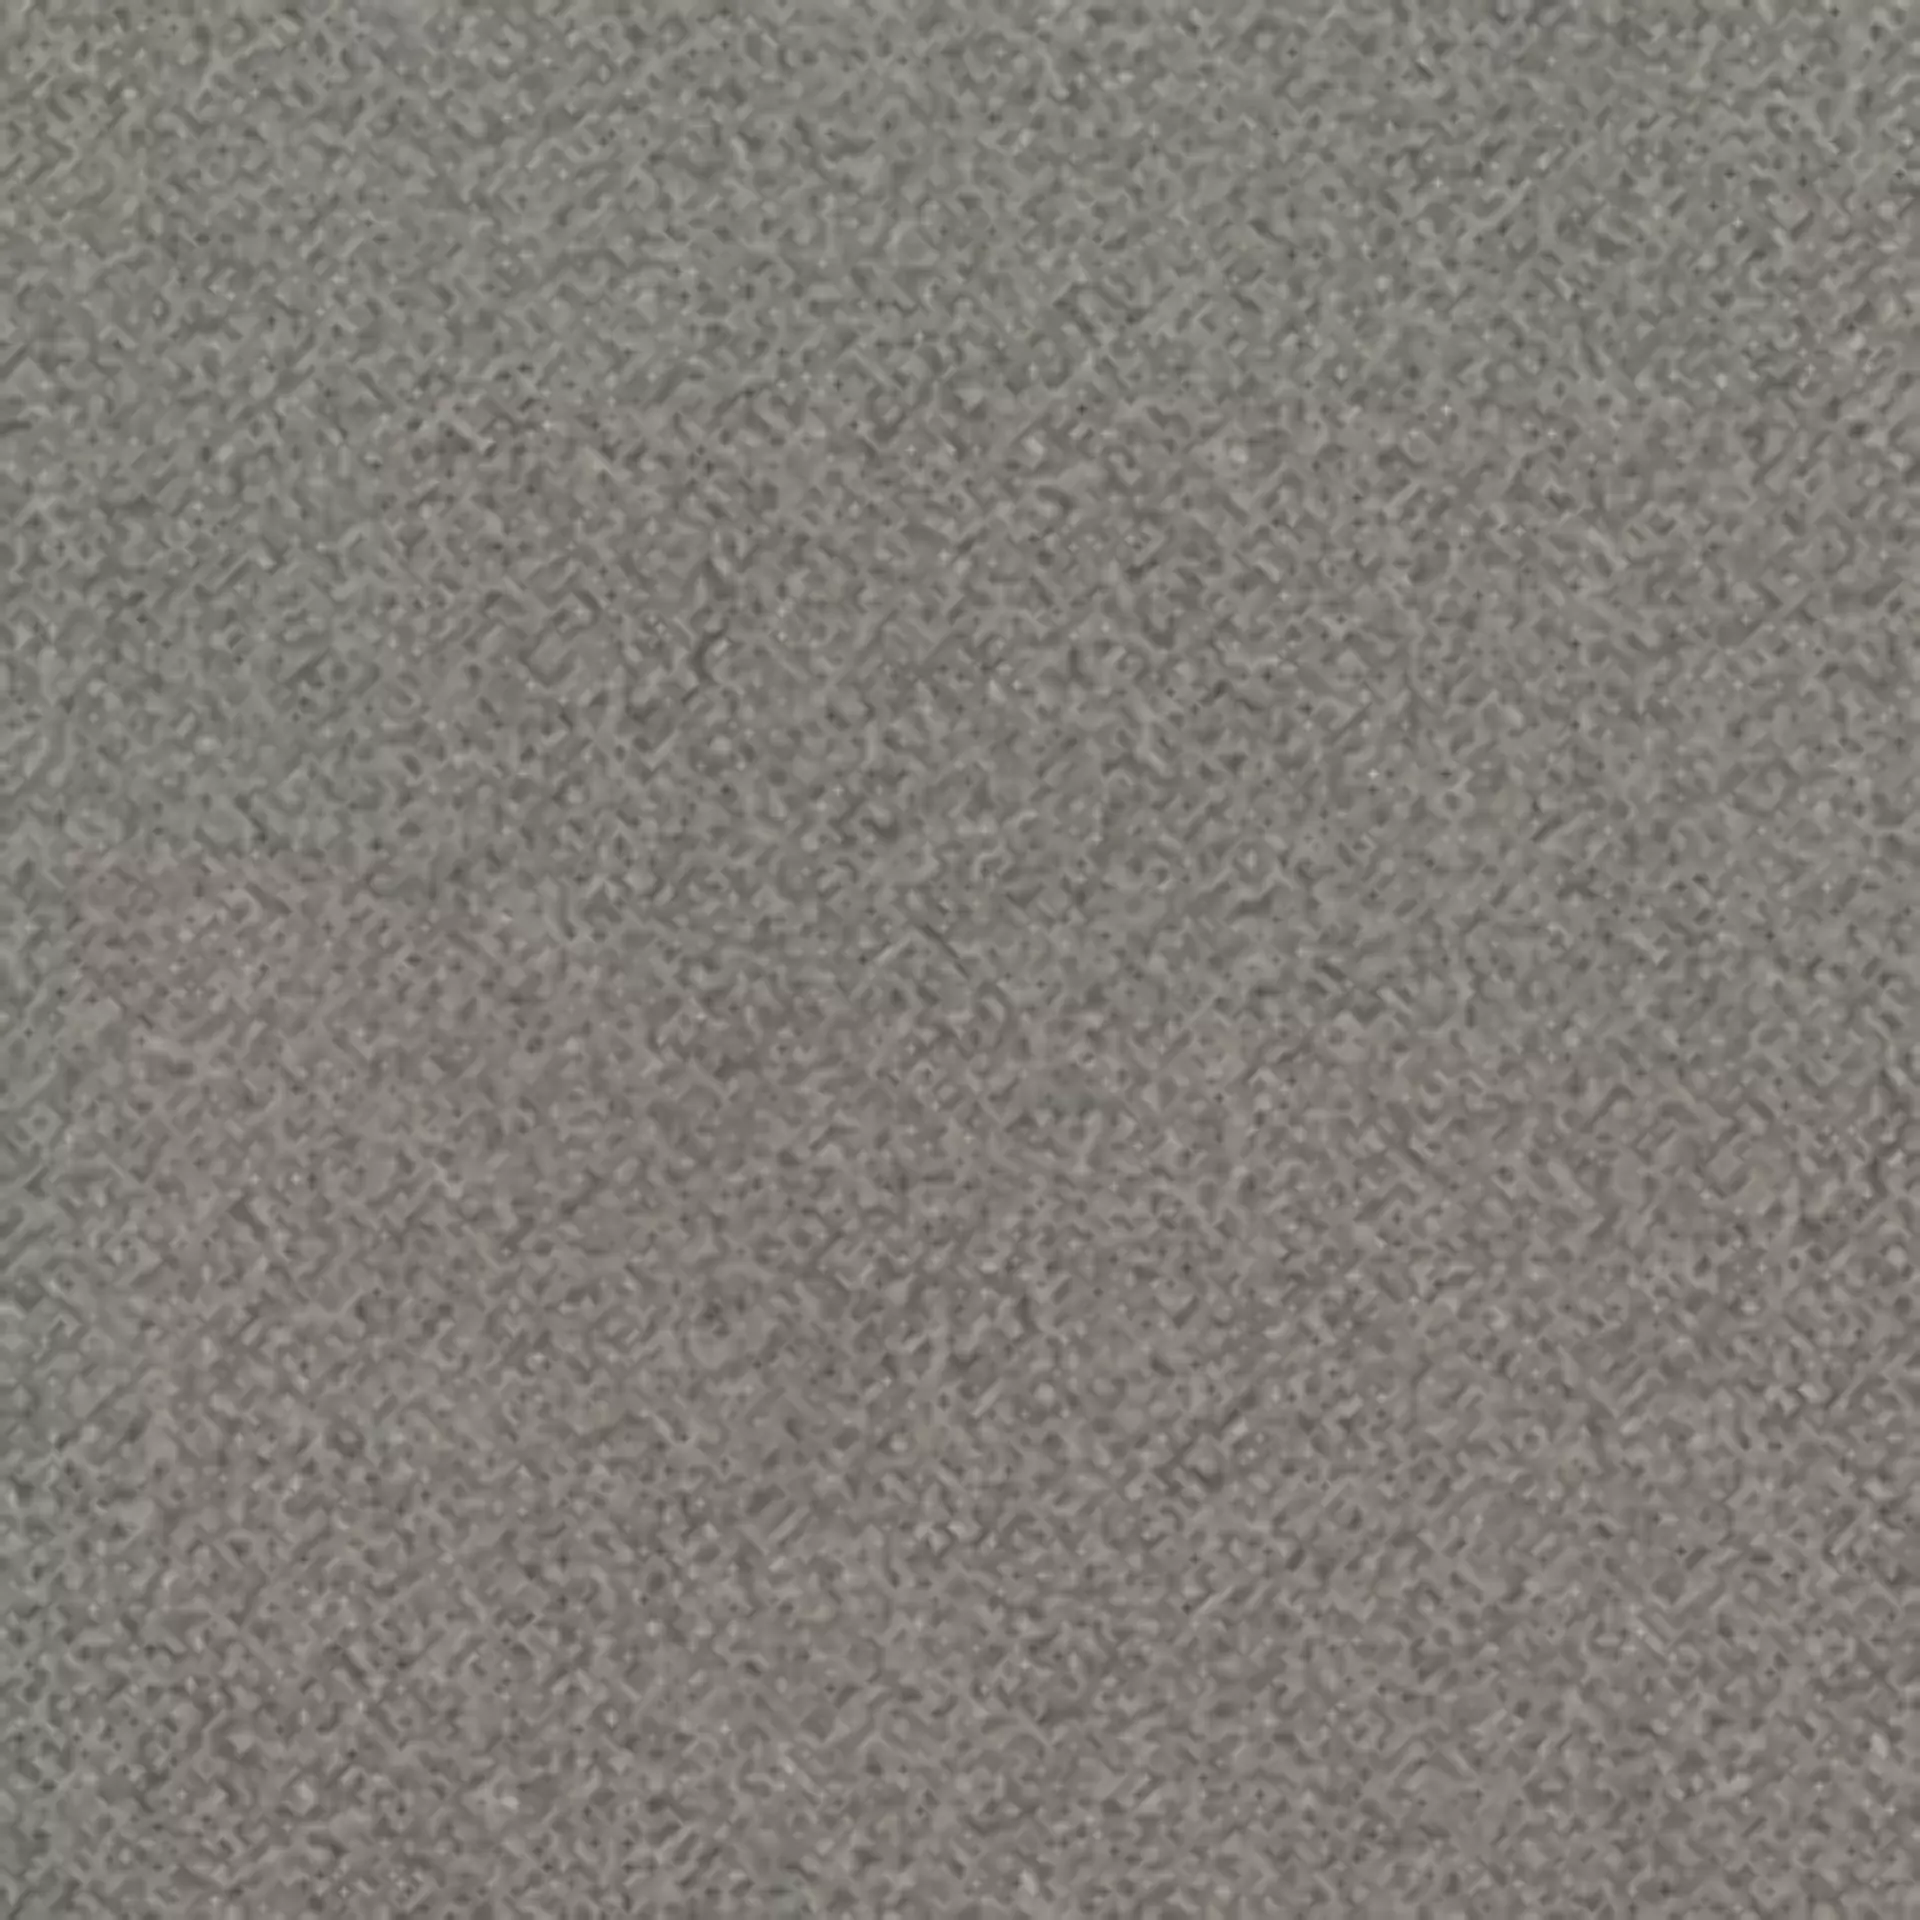 Wandfliese,Bodenfliese Villeroy & Boch Unit Three Graphit Matt Graphit 2020-GT50 matt 20x20cm 13mm